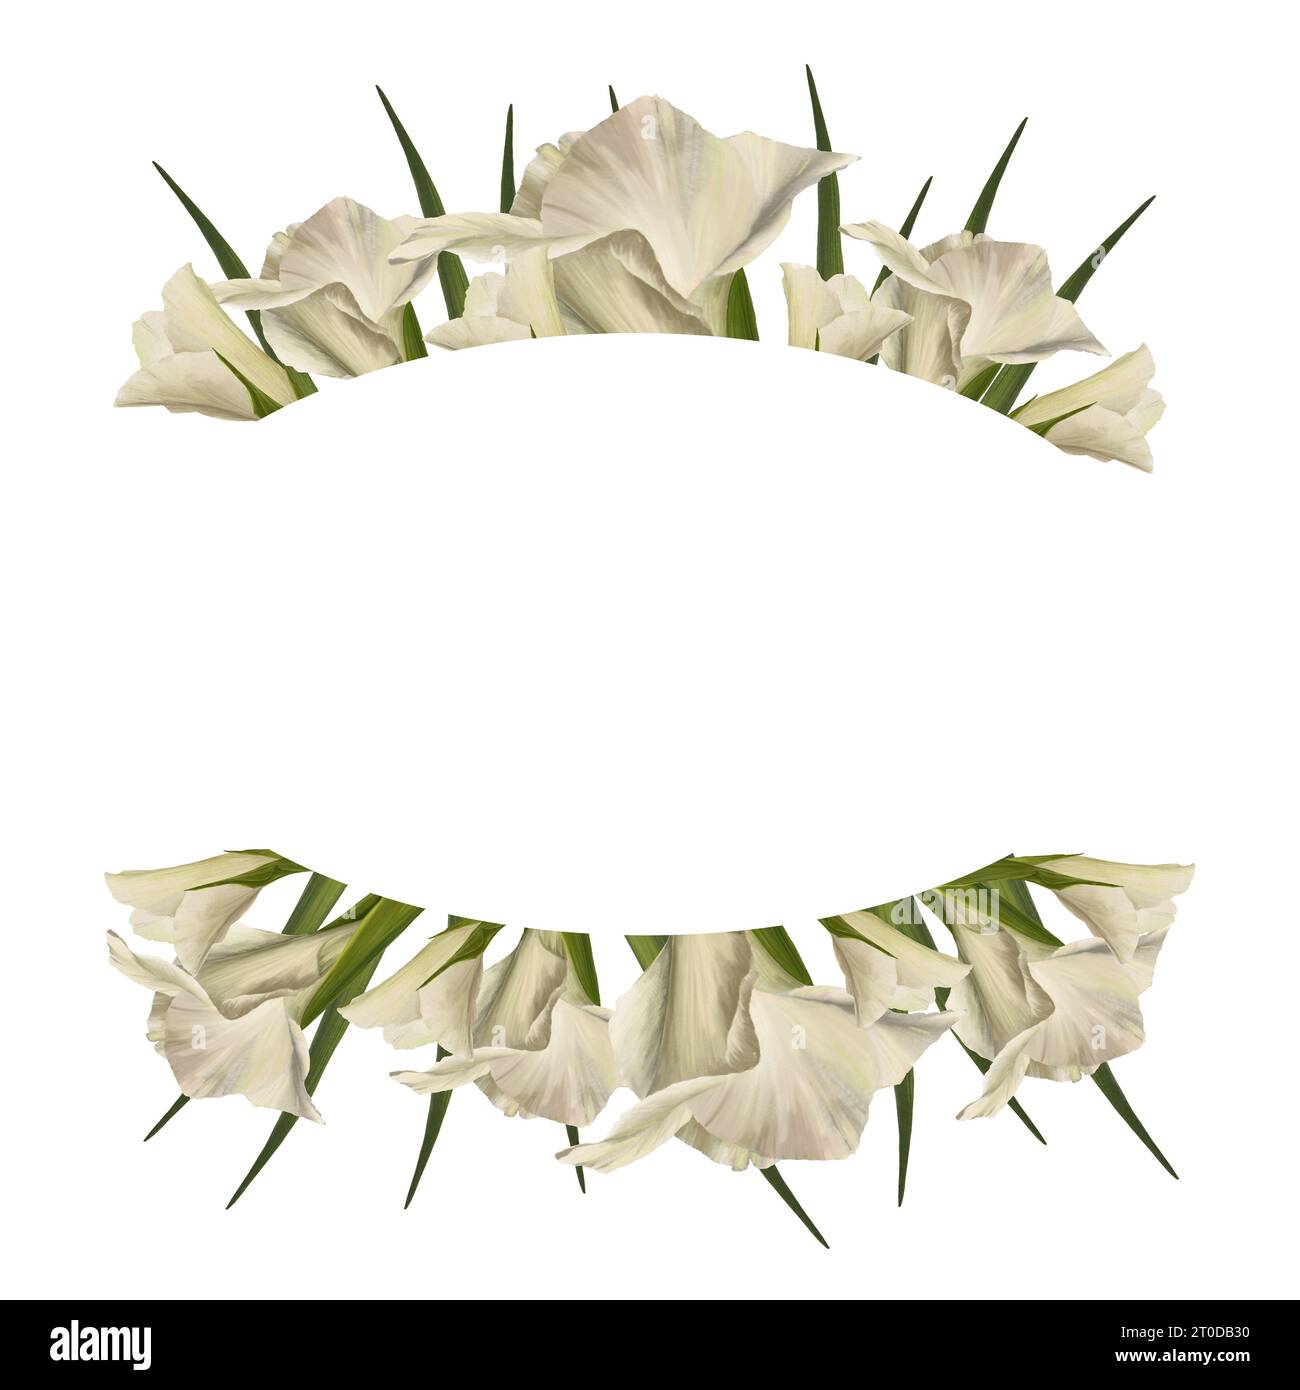 Gladioles aquarelles. Bannière ovale florale, cadre avec des fleurs blanches, des bourgeons et des feuilles peintes à la main illustration isolée sur fond blanc Botanique Banque D'Images